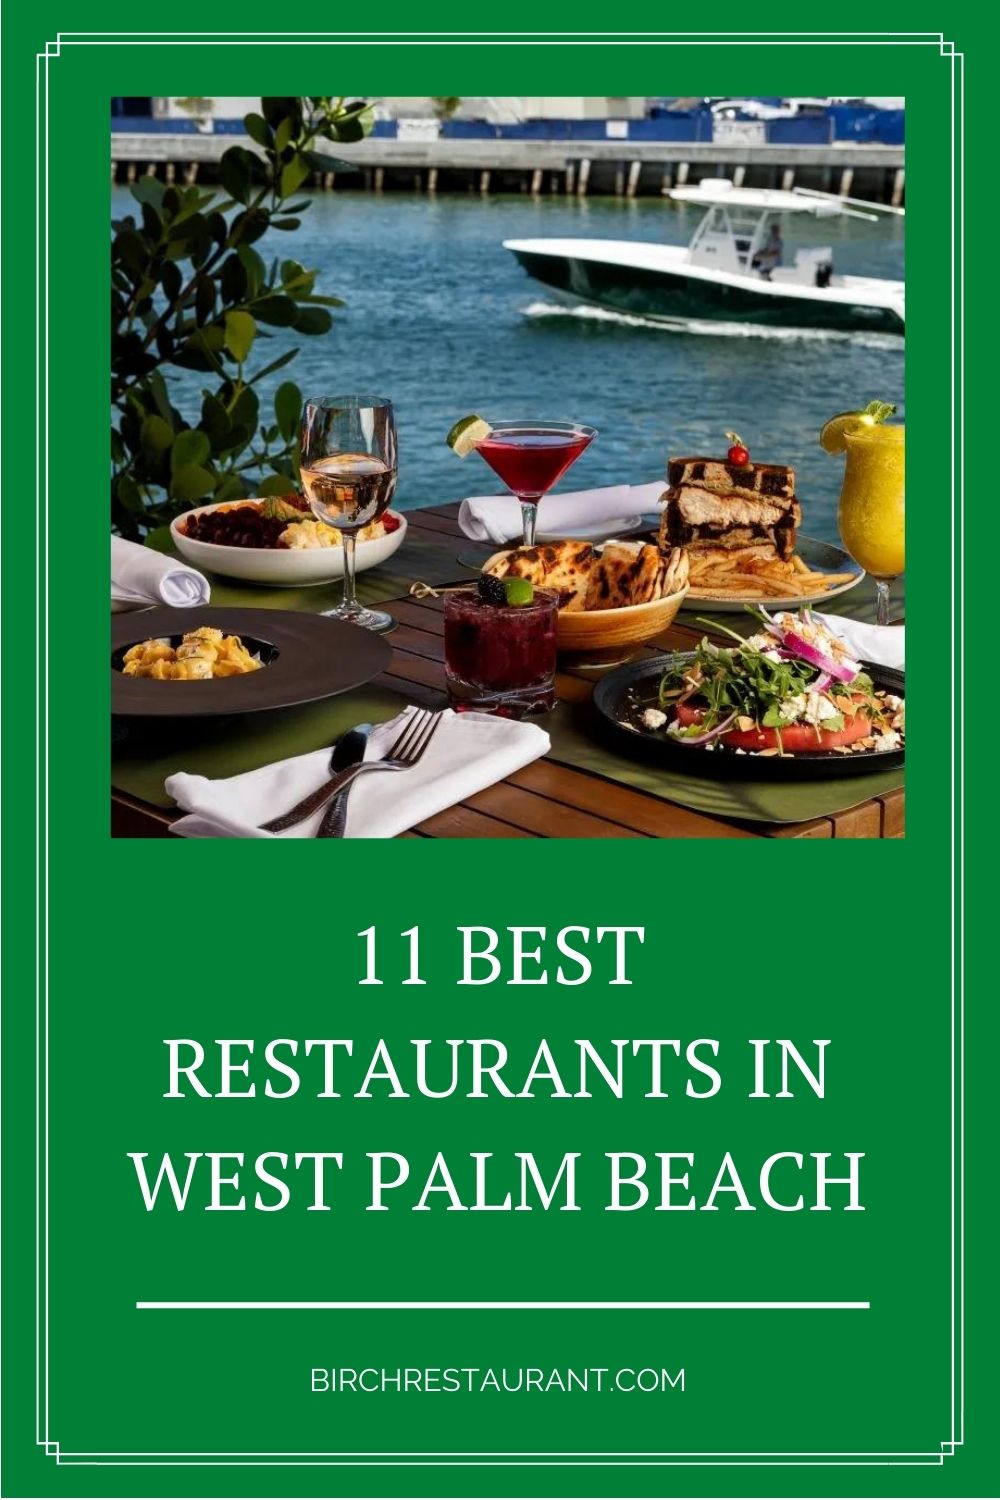 Best Restaurants in West Palm Beach